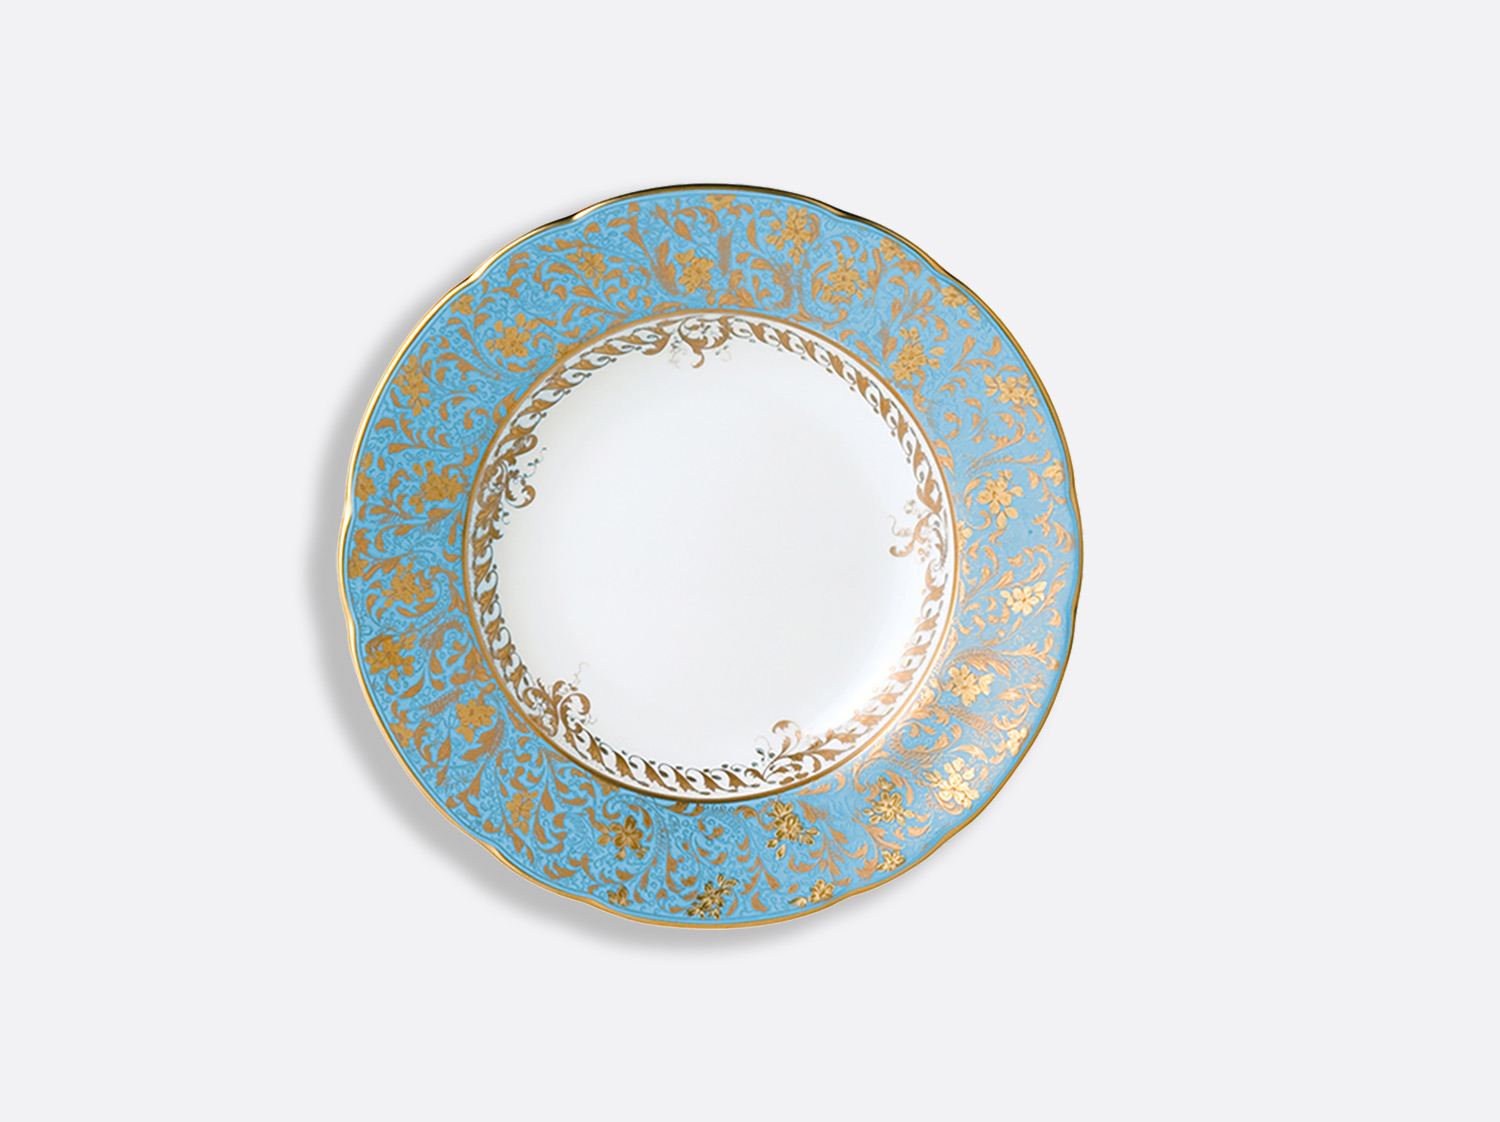 Assiette creuse à aile 22,5 cm en porcelaine de la collection Eden turquoise Bernardaud